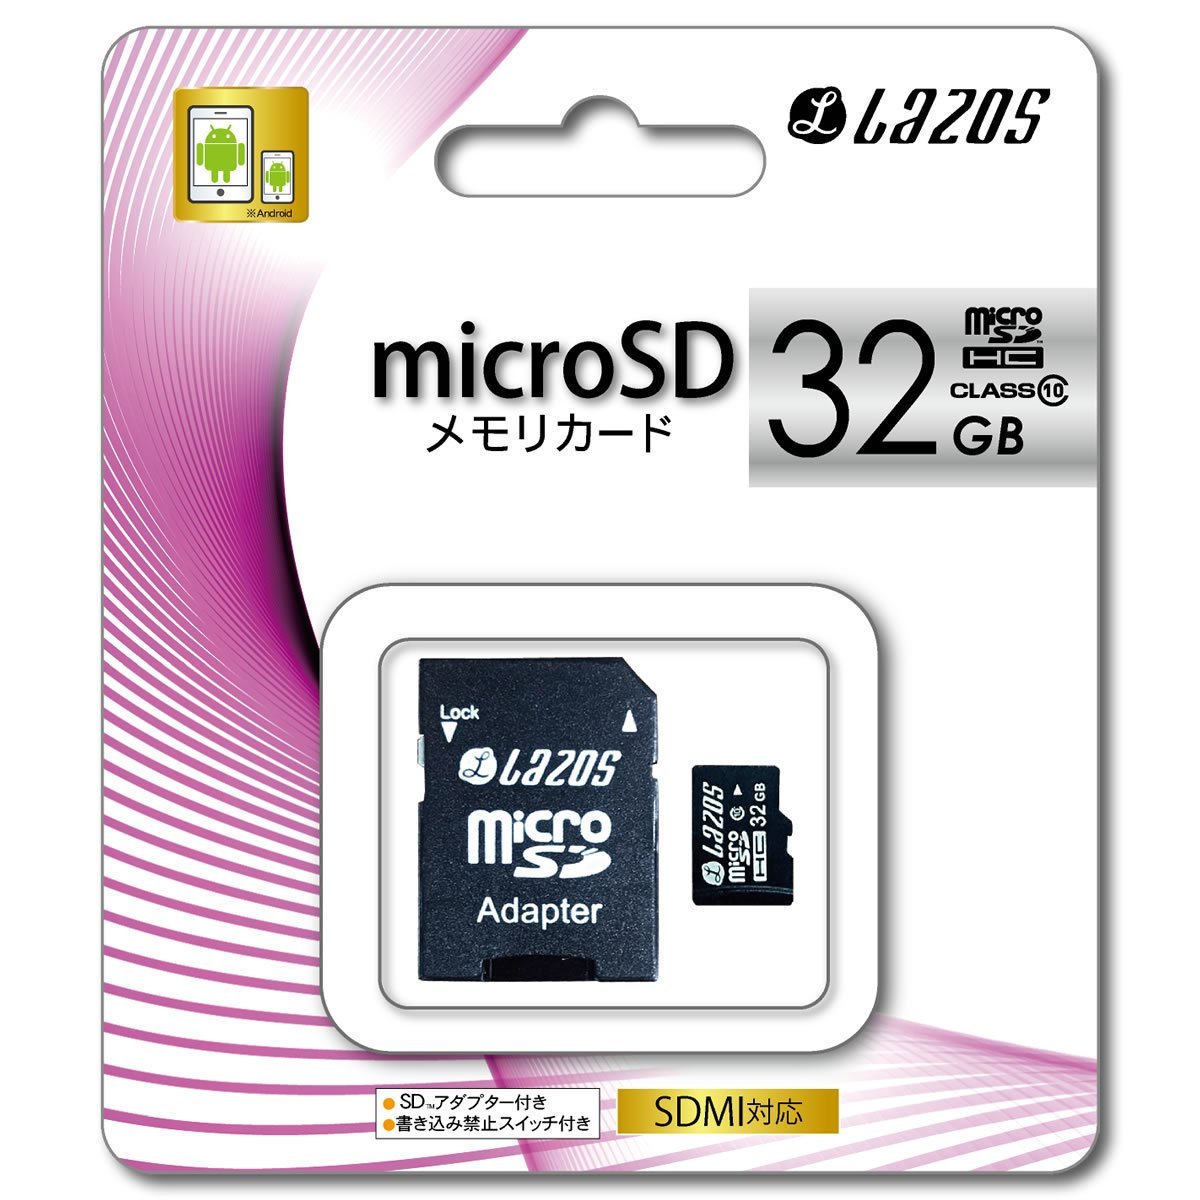 microSDHCメモリーカード マイクロSDカード 変換アダプタ付き 32GB CLASS10 L-32MS10 カメラ 写真 動画 連絡先 データ 保存